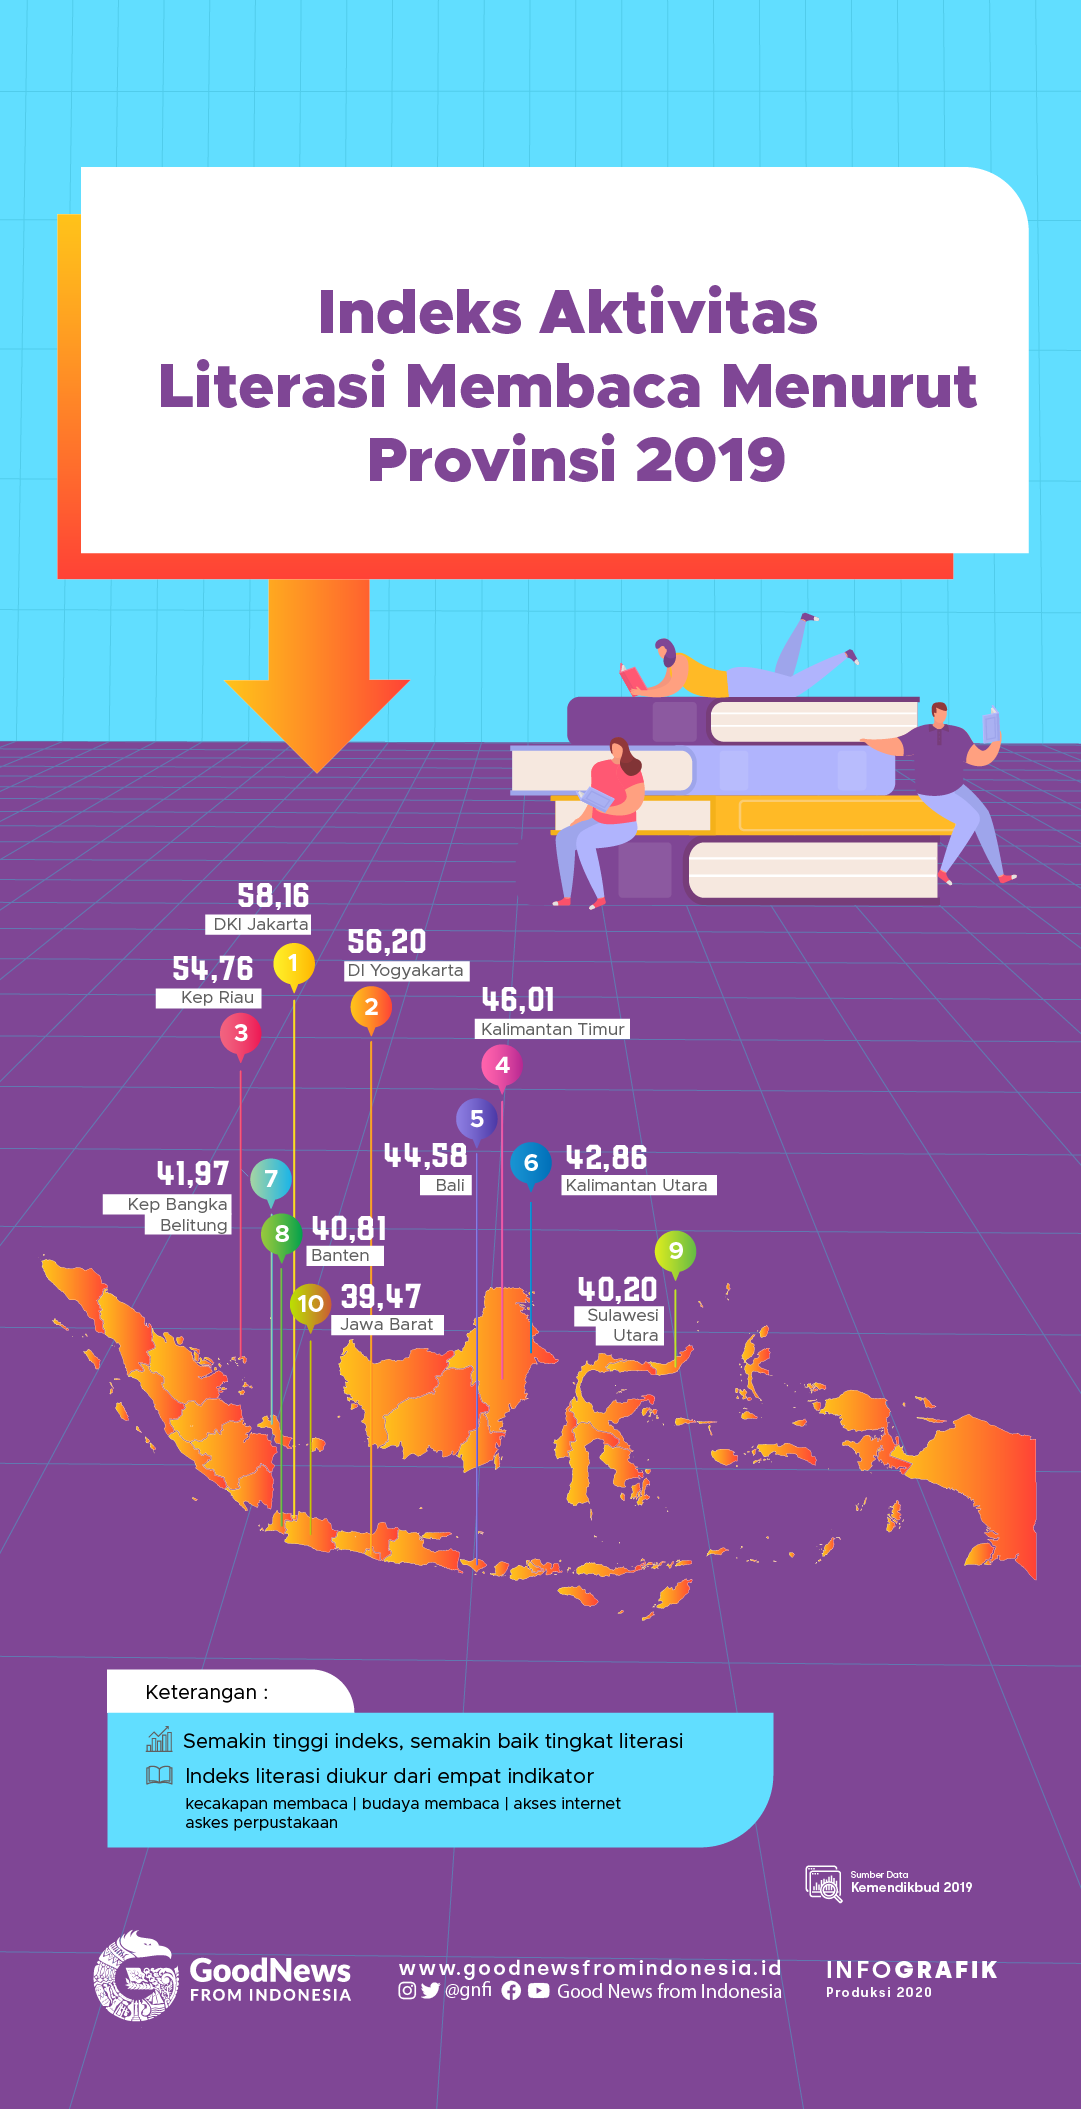 Jakarta Unggul dalam Indeks Aktivitas Literasi  Membaca di 